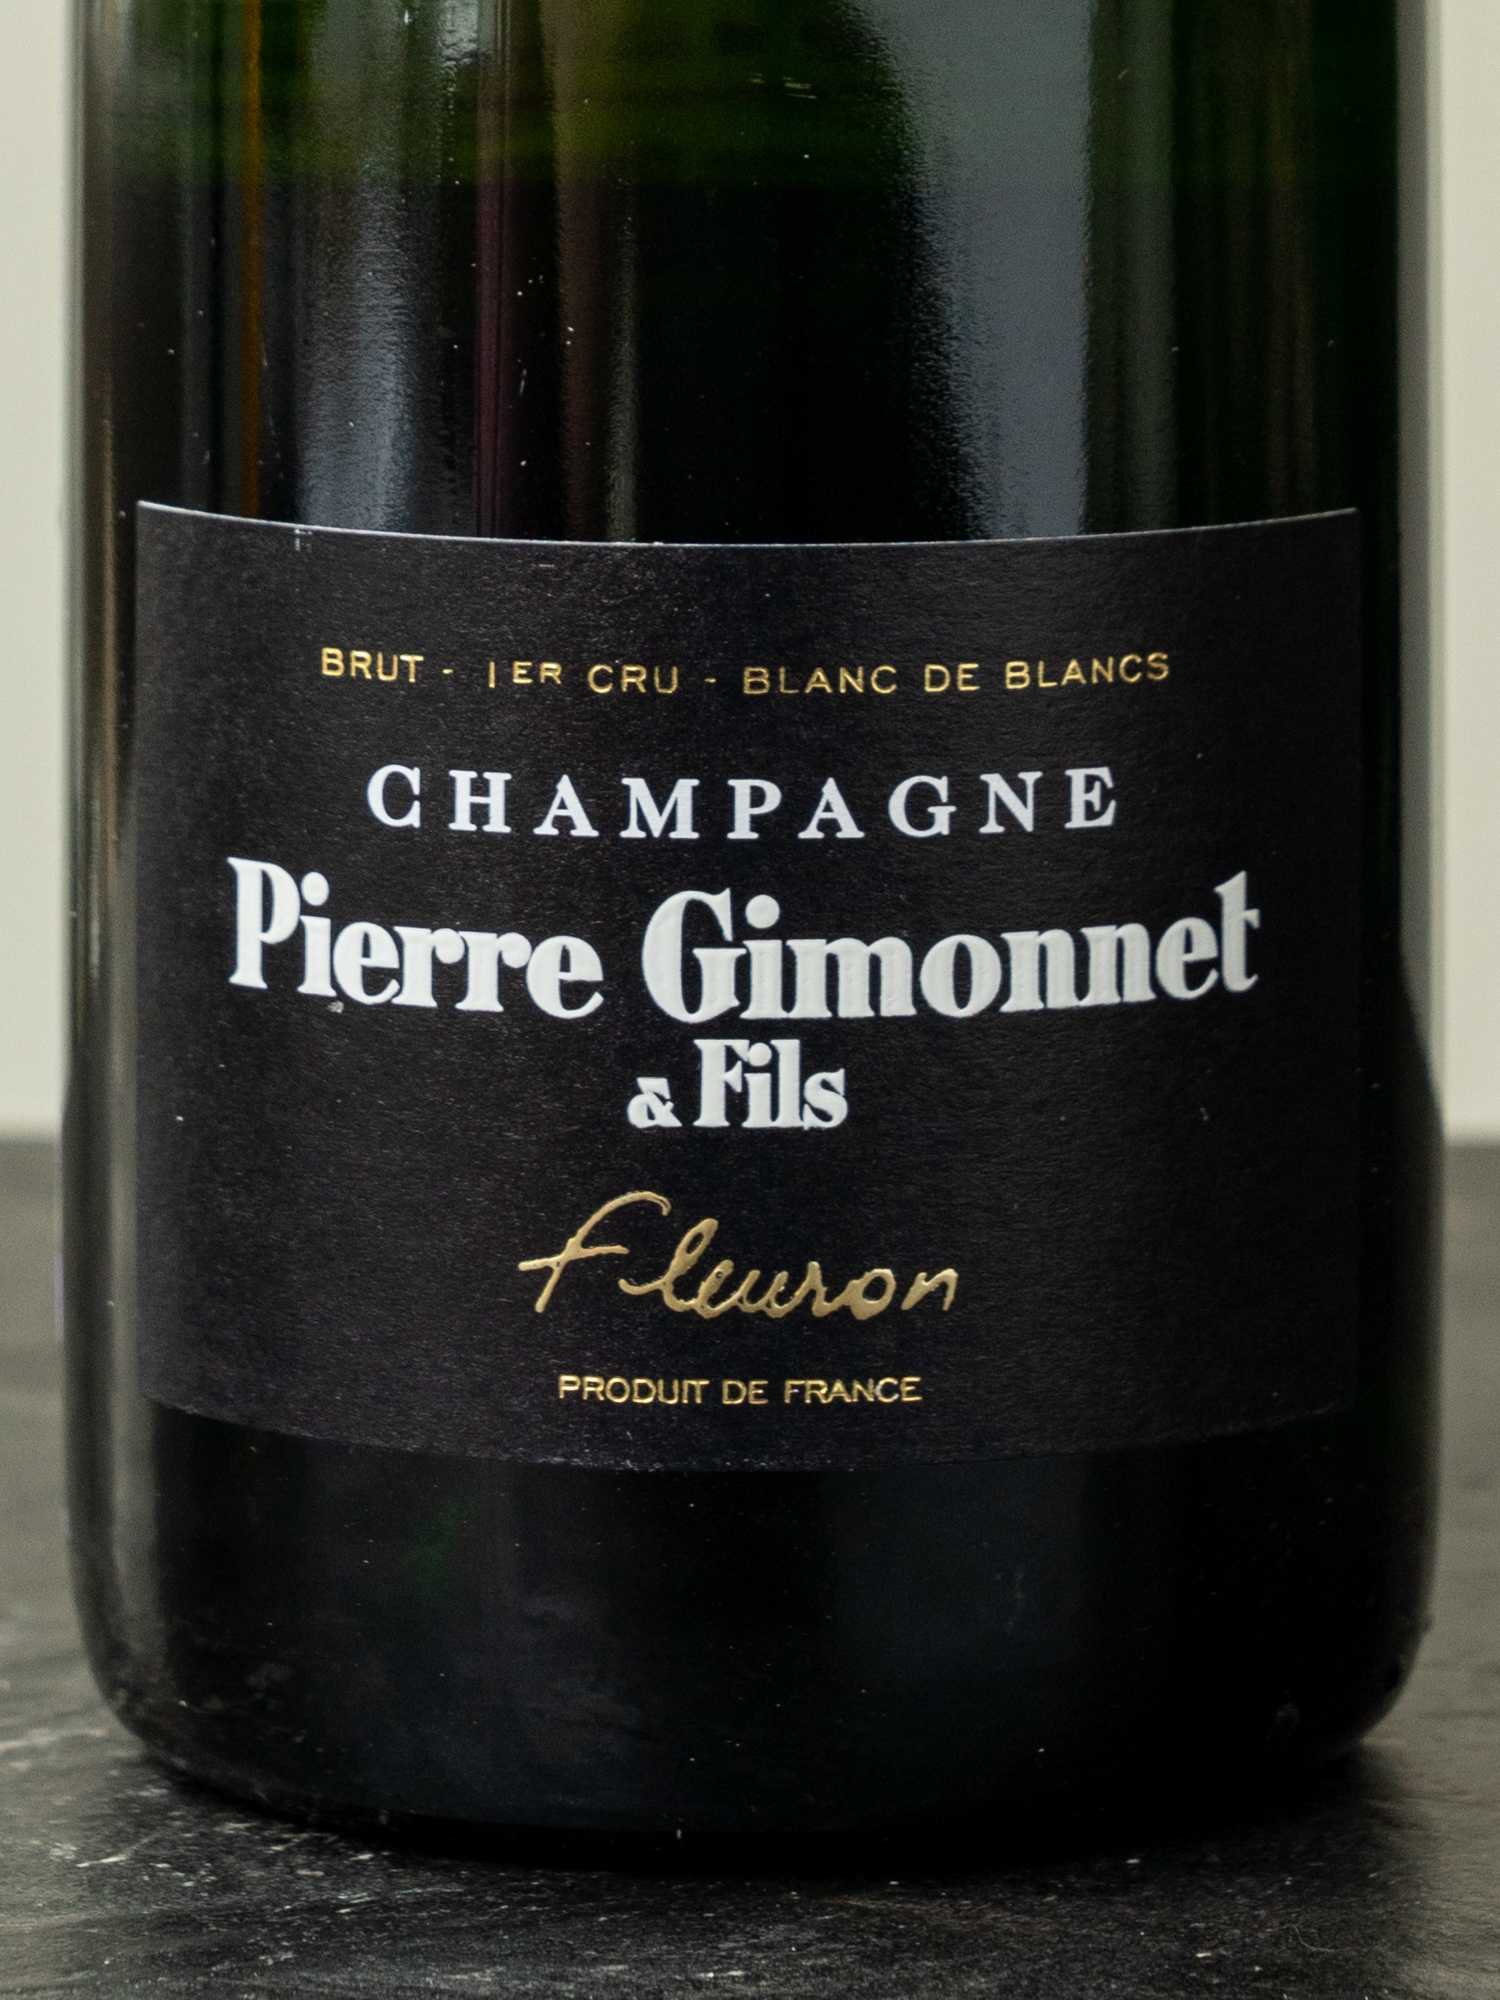 Шампанское Pierre Gimonnet & Fils Fleuron Blanc de Blancs Brut 1er Cru Champagne / Шампань Пьер Жимоне э Фис Флерон Премье Крю Брют